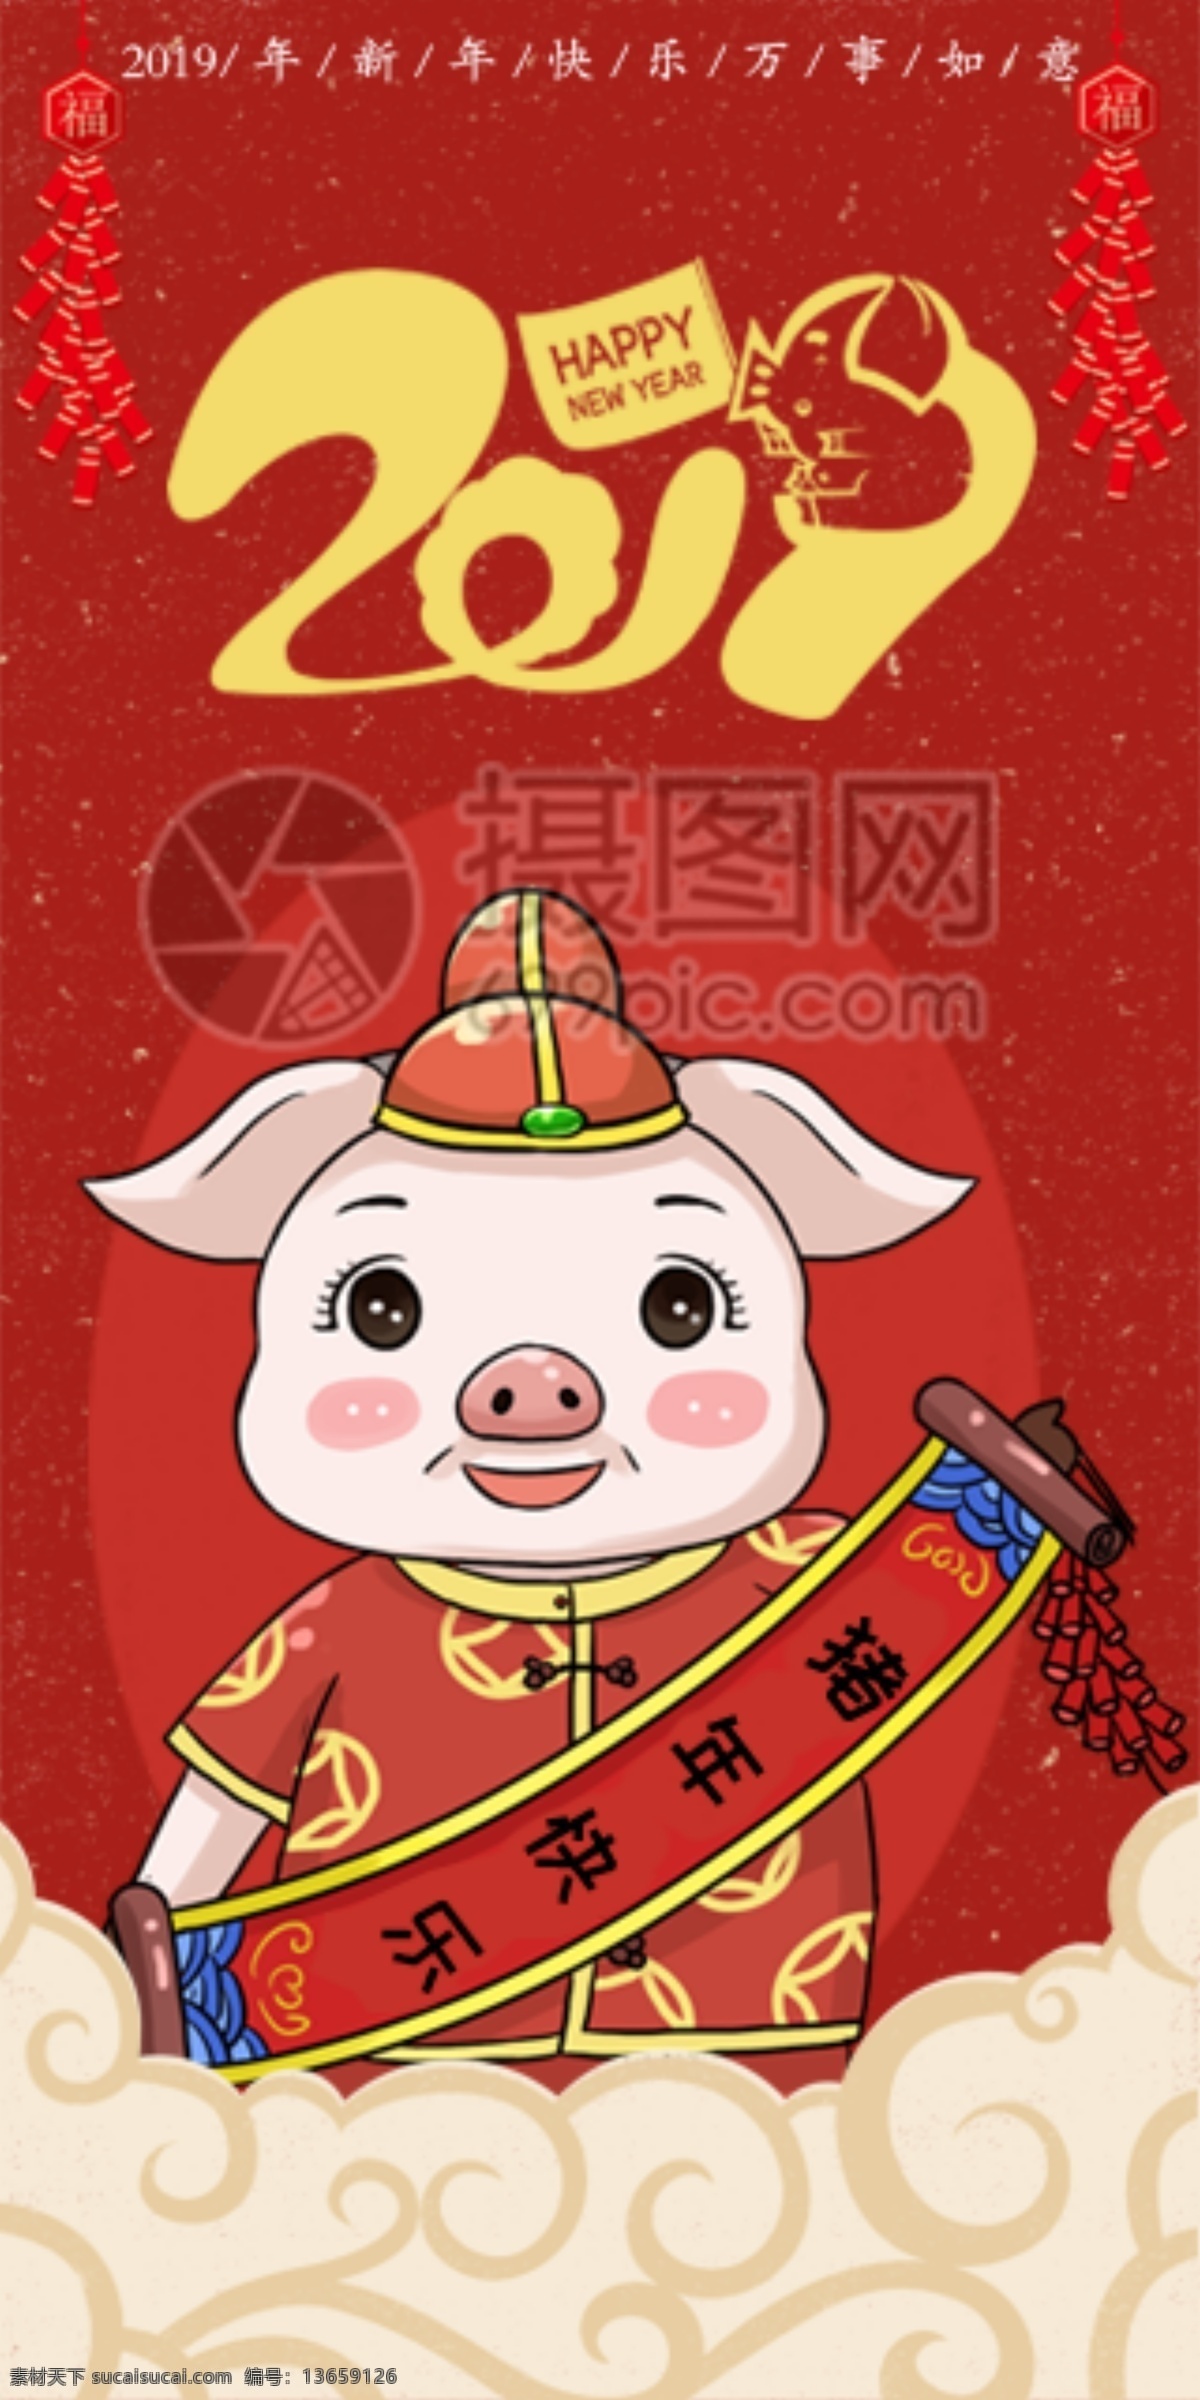 2019 猪年 快乐 新春 卡通 红包 猪年红包 新春红包 红包素材 红包设计 新年红 新年红包 猪年快乐 卡通红包